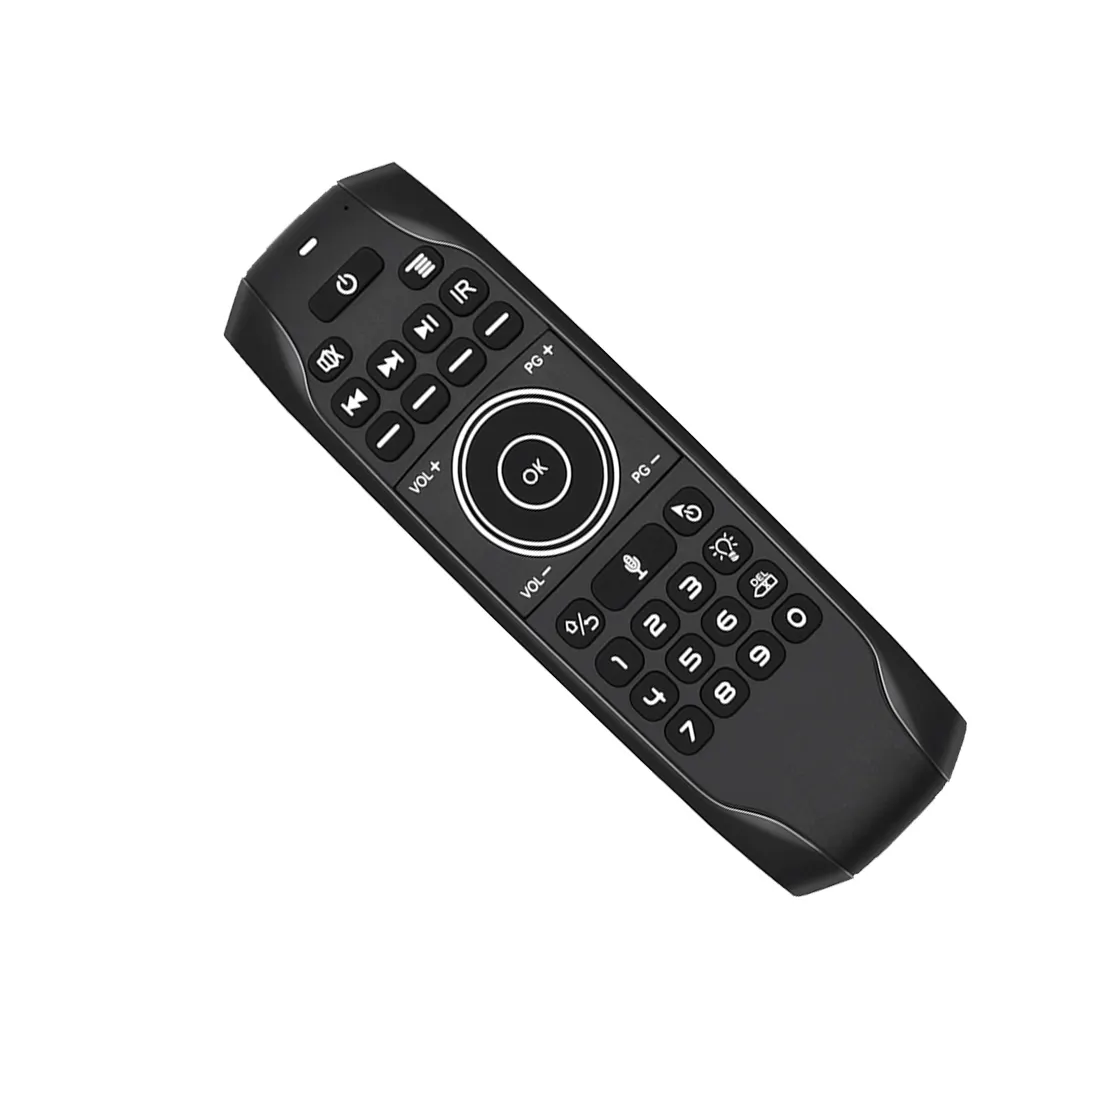 Teclado universal G7V Pro para TV com controle remoto por voz, teclado retroiluminado USB recarregável, smart tv 2.4G sem fio Air Mouseh, revendedor IPT